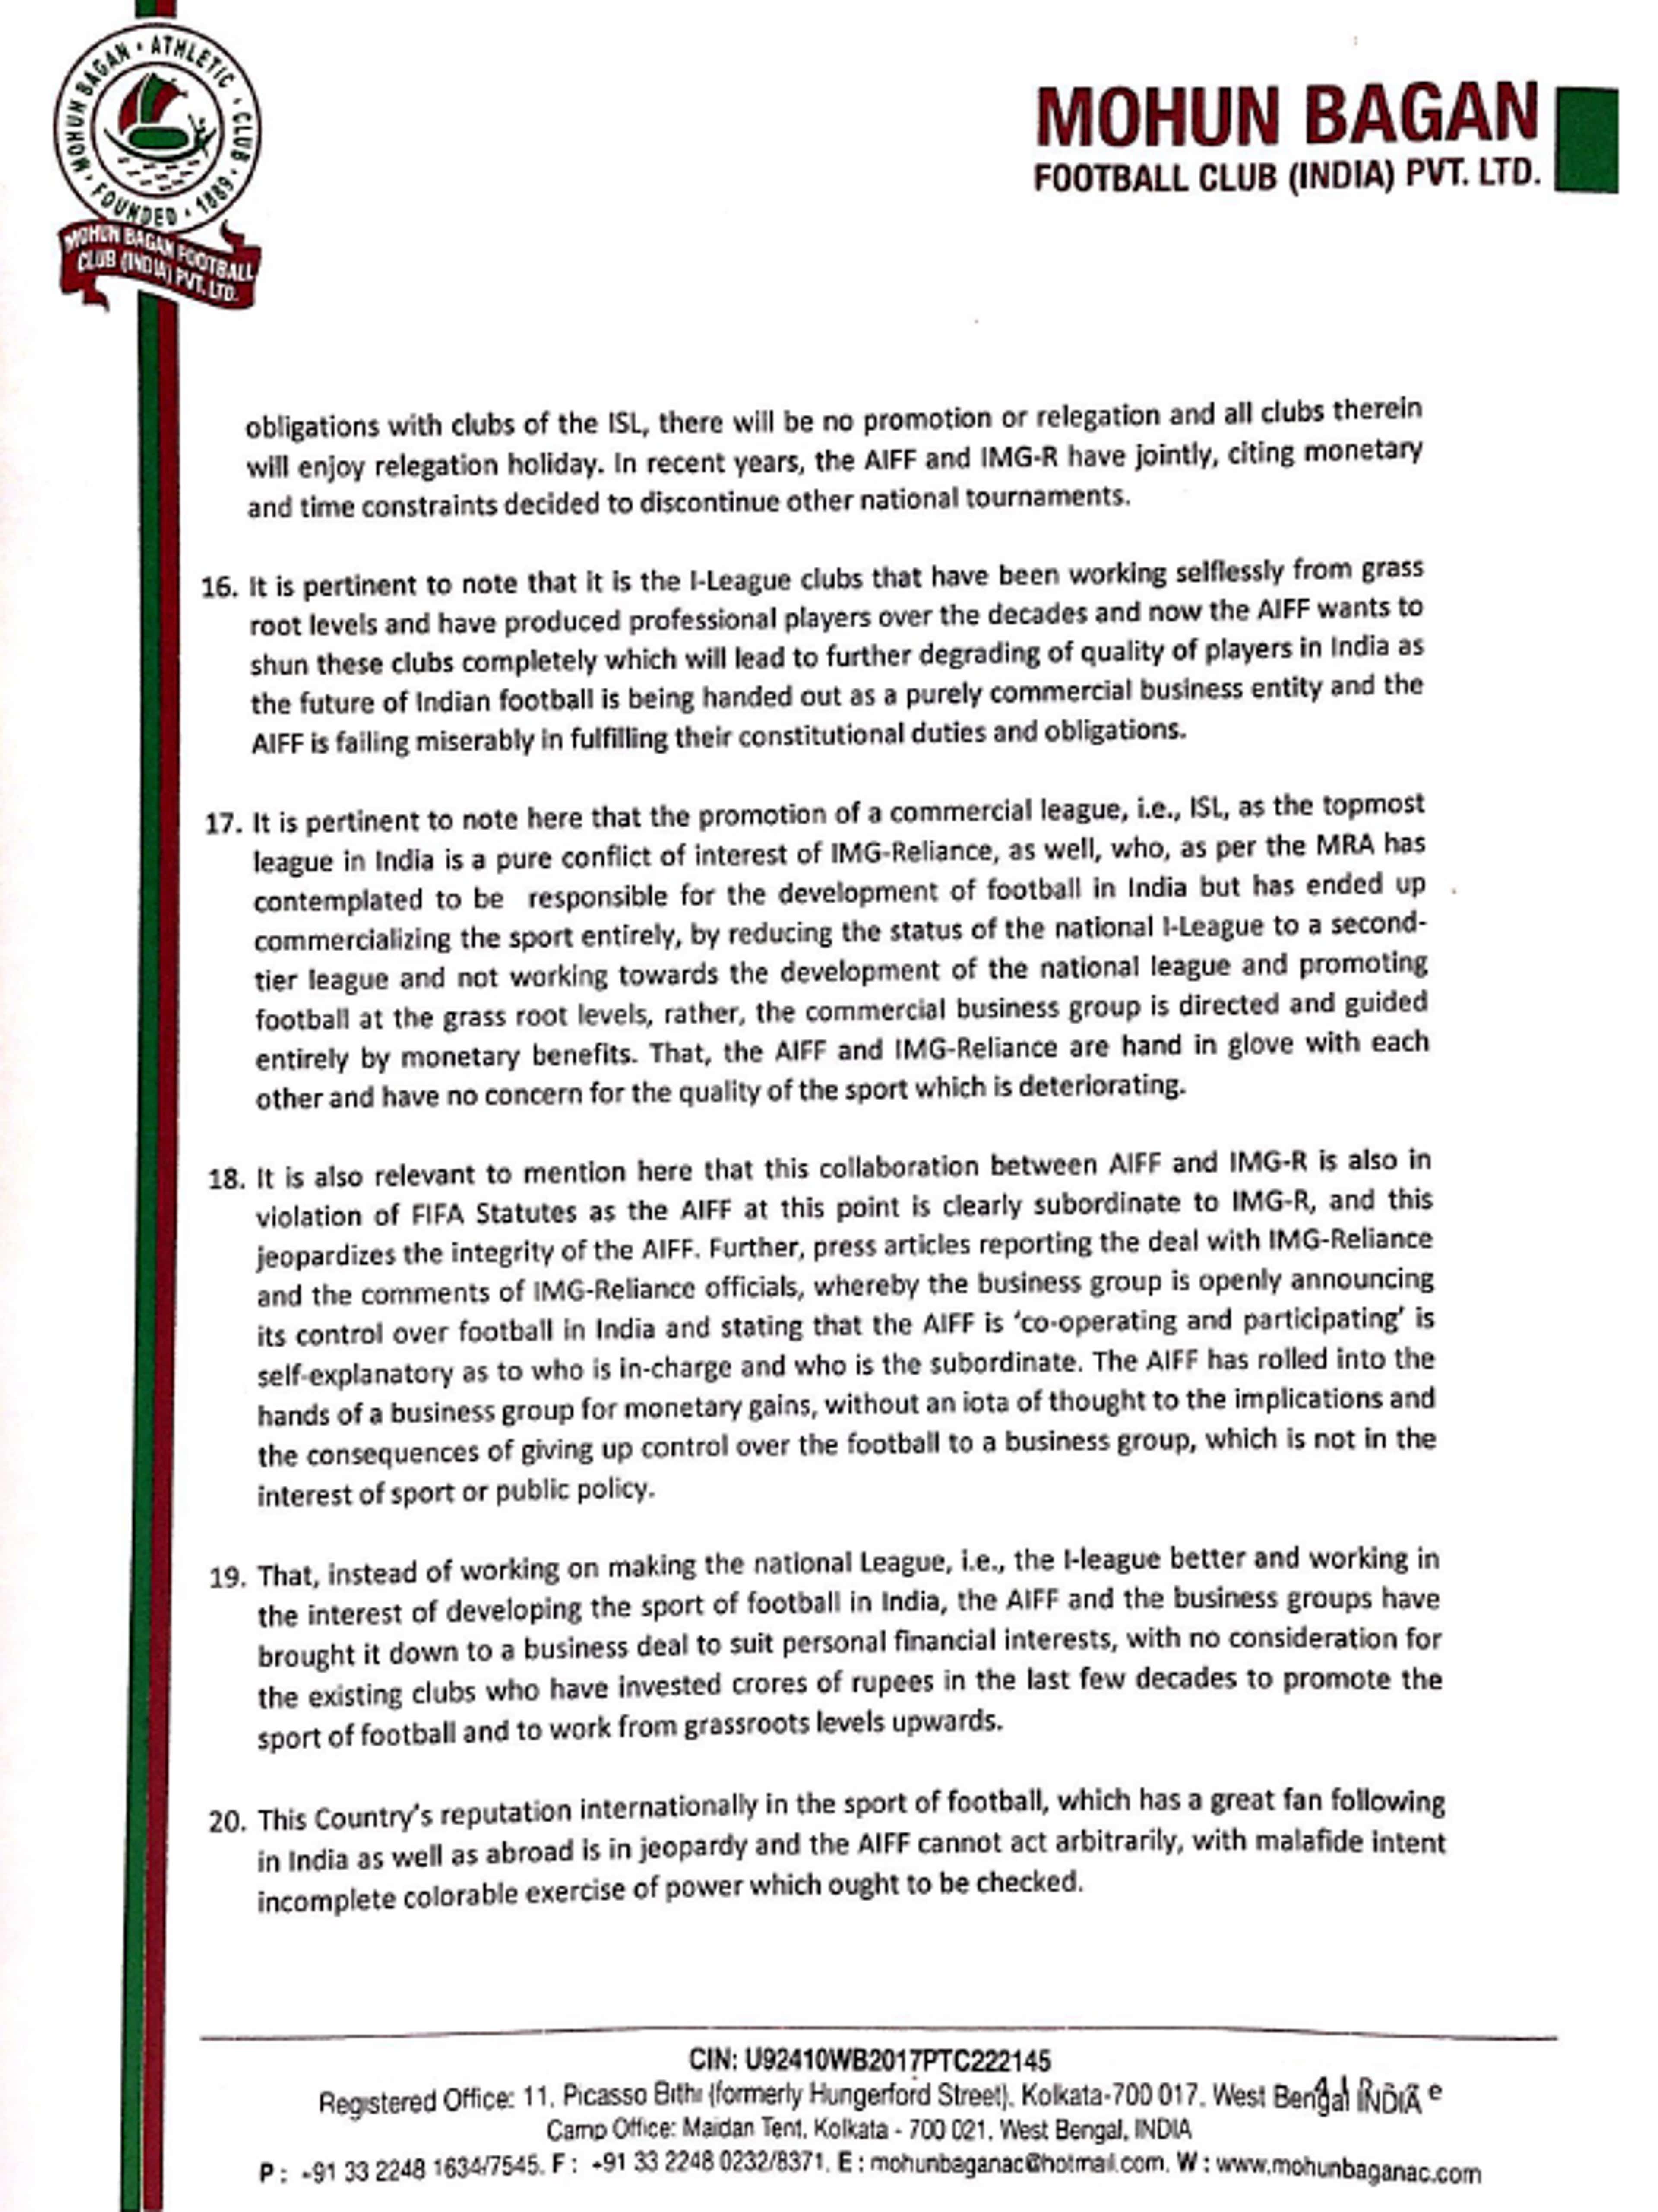 Page 4 - Mohun Bagan letter to PM Modi